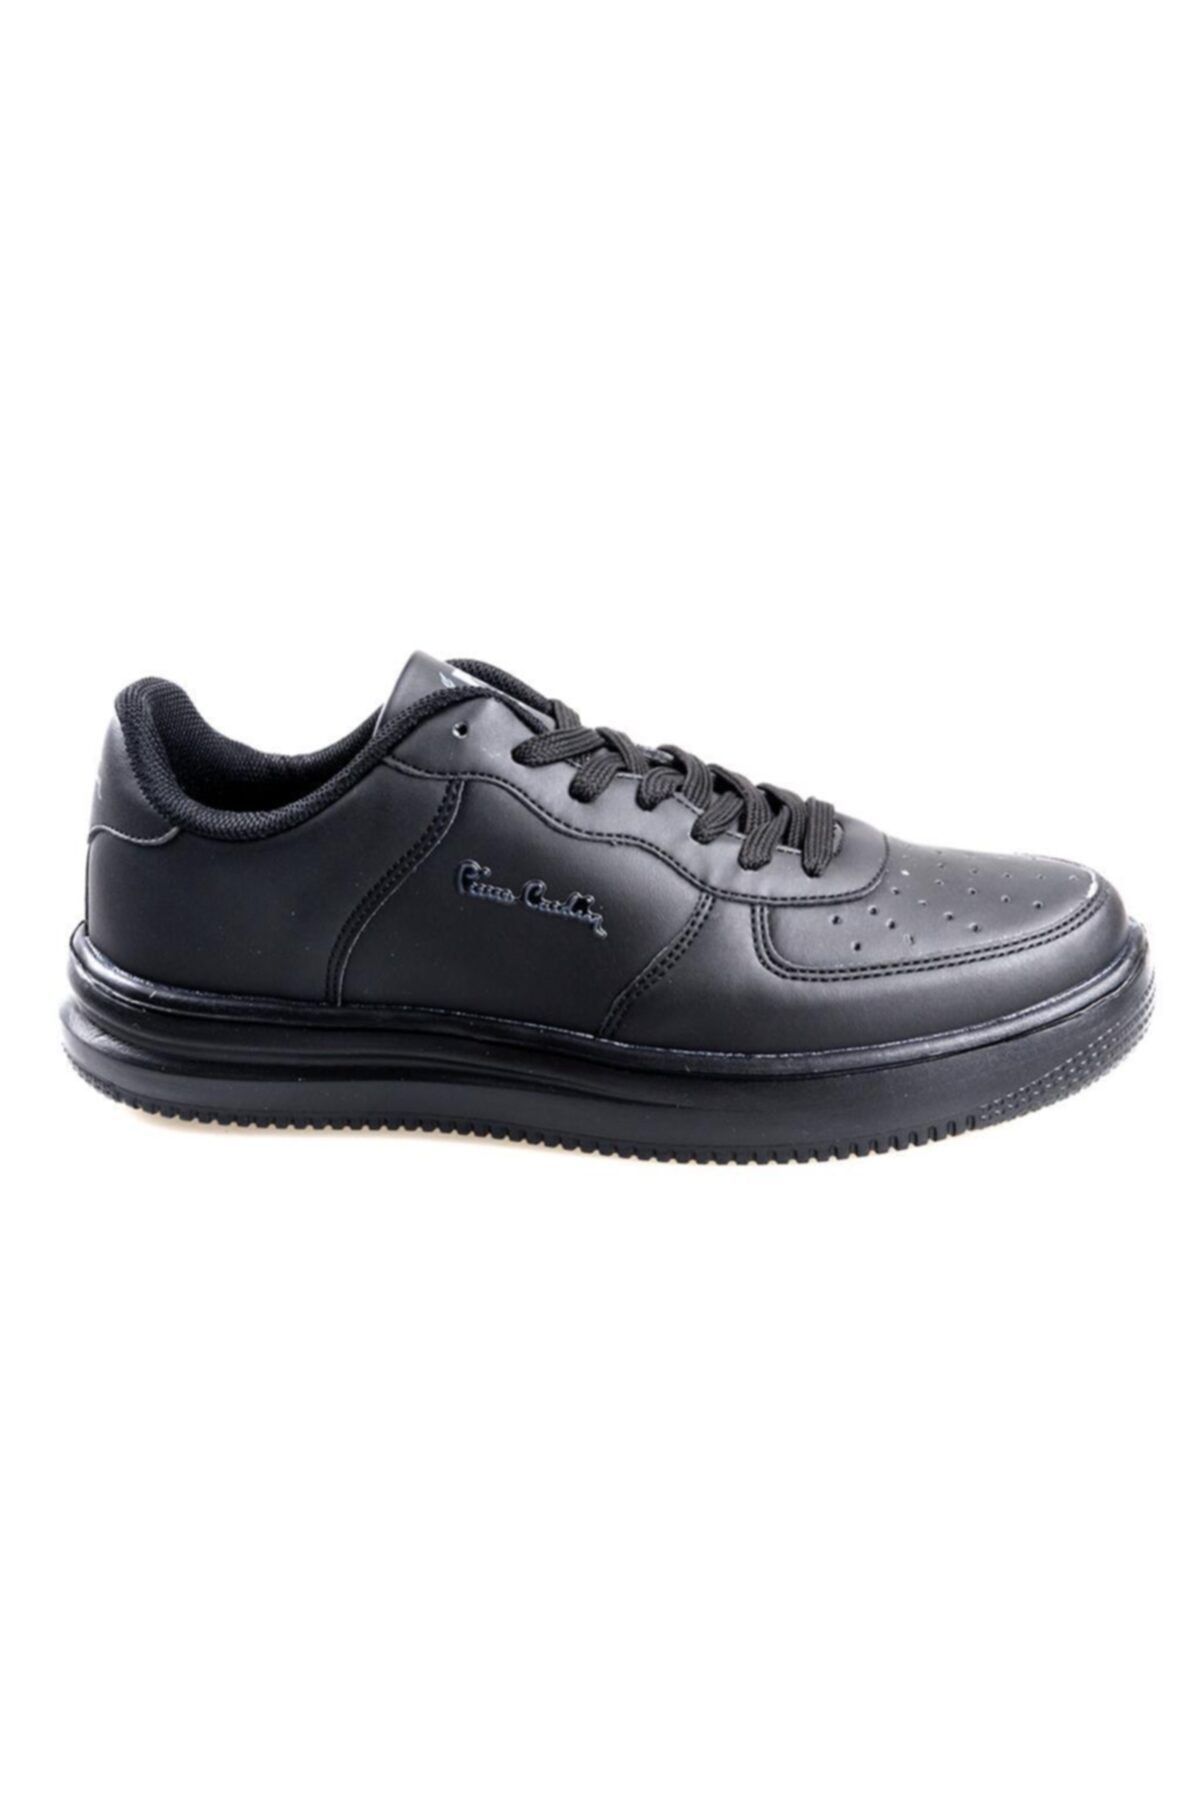 Pierre Cardin Pc-10148 Siyah Erkek-kız Çocuk Sneaker Spor Ayakkabı